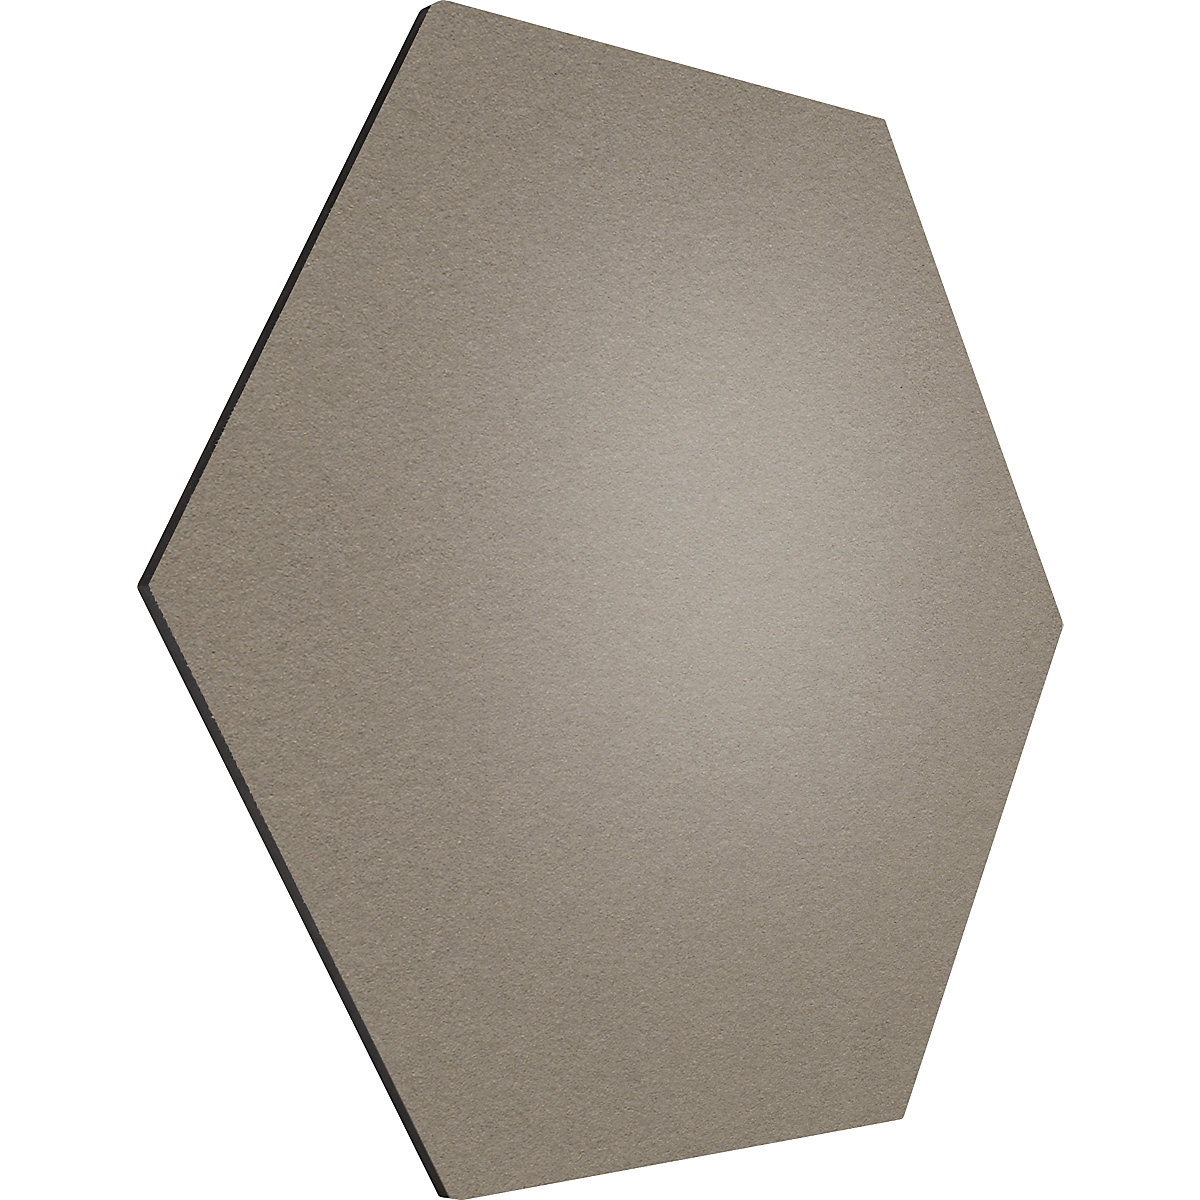 Tableau à épingles design hexagonal – Chameleon, liège, l x h 600 x 600 mm, taupe-31